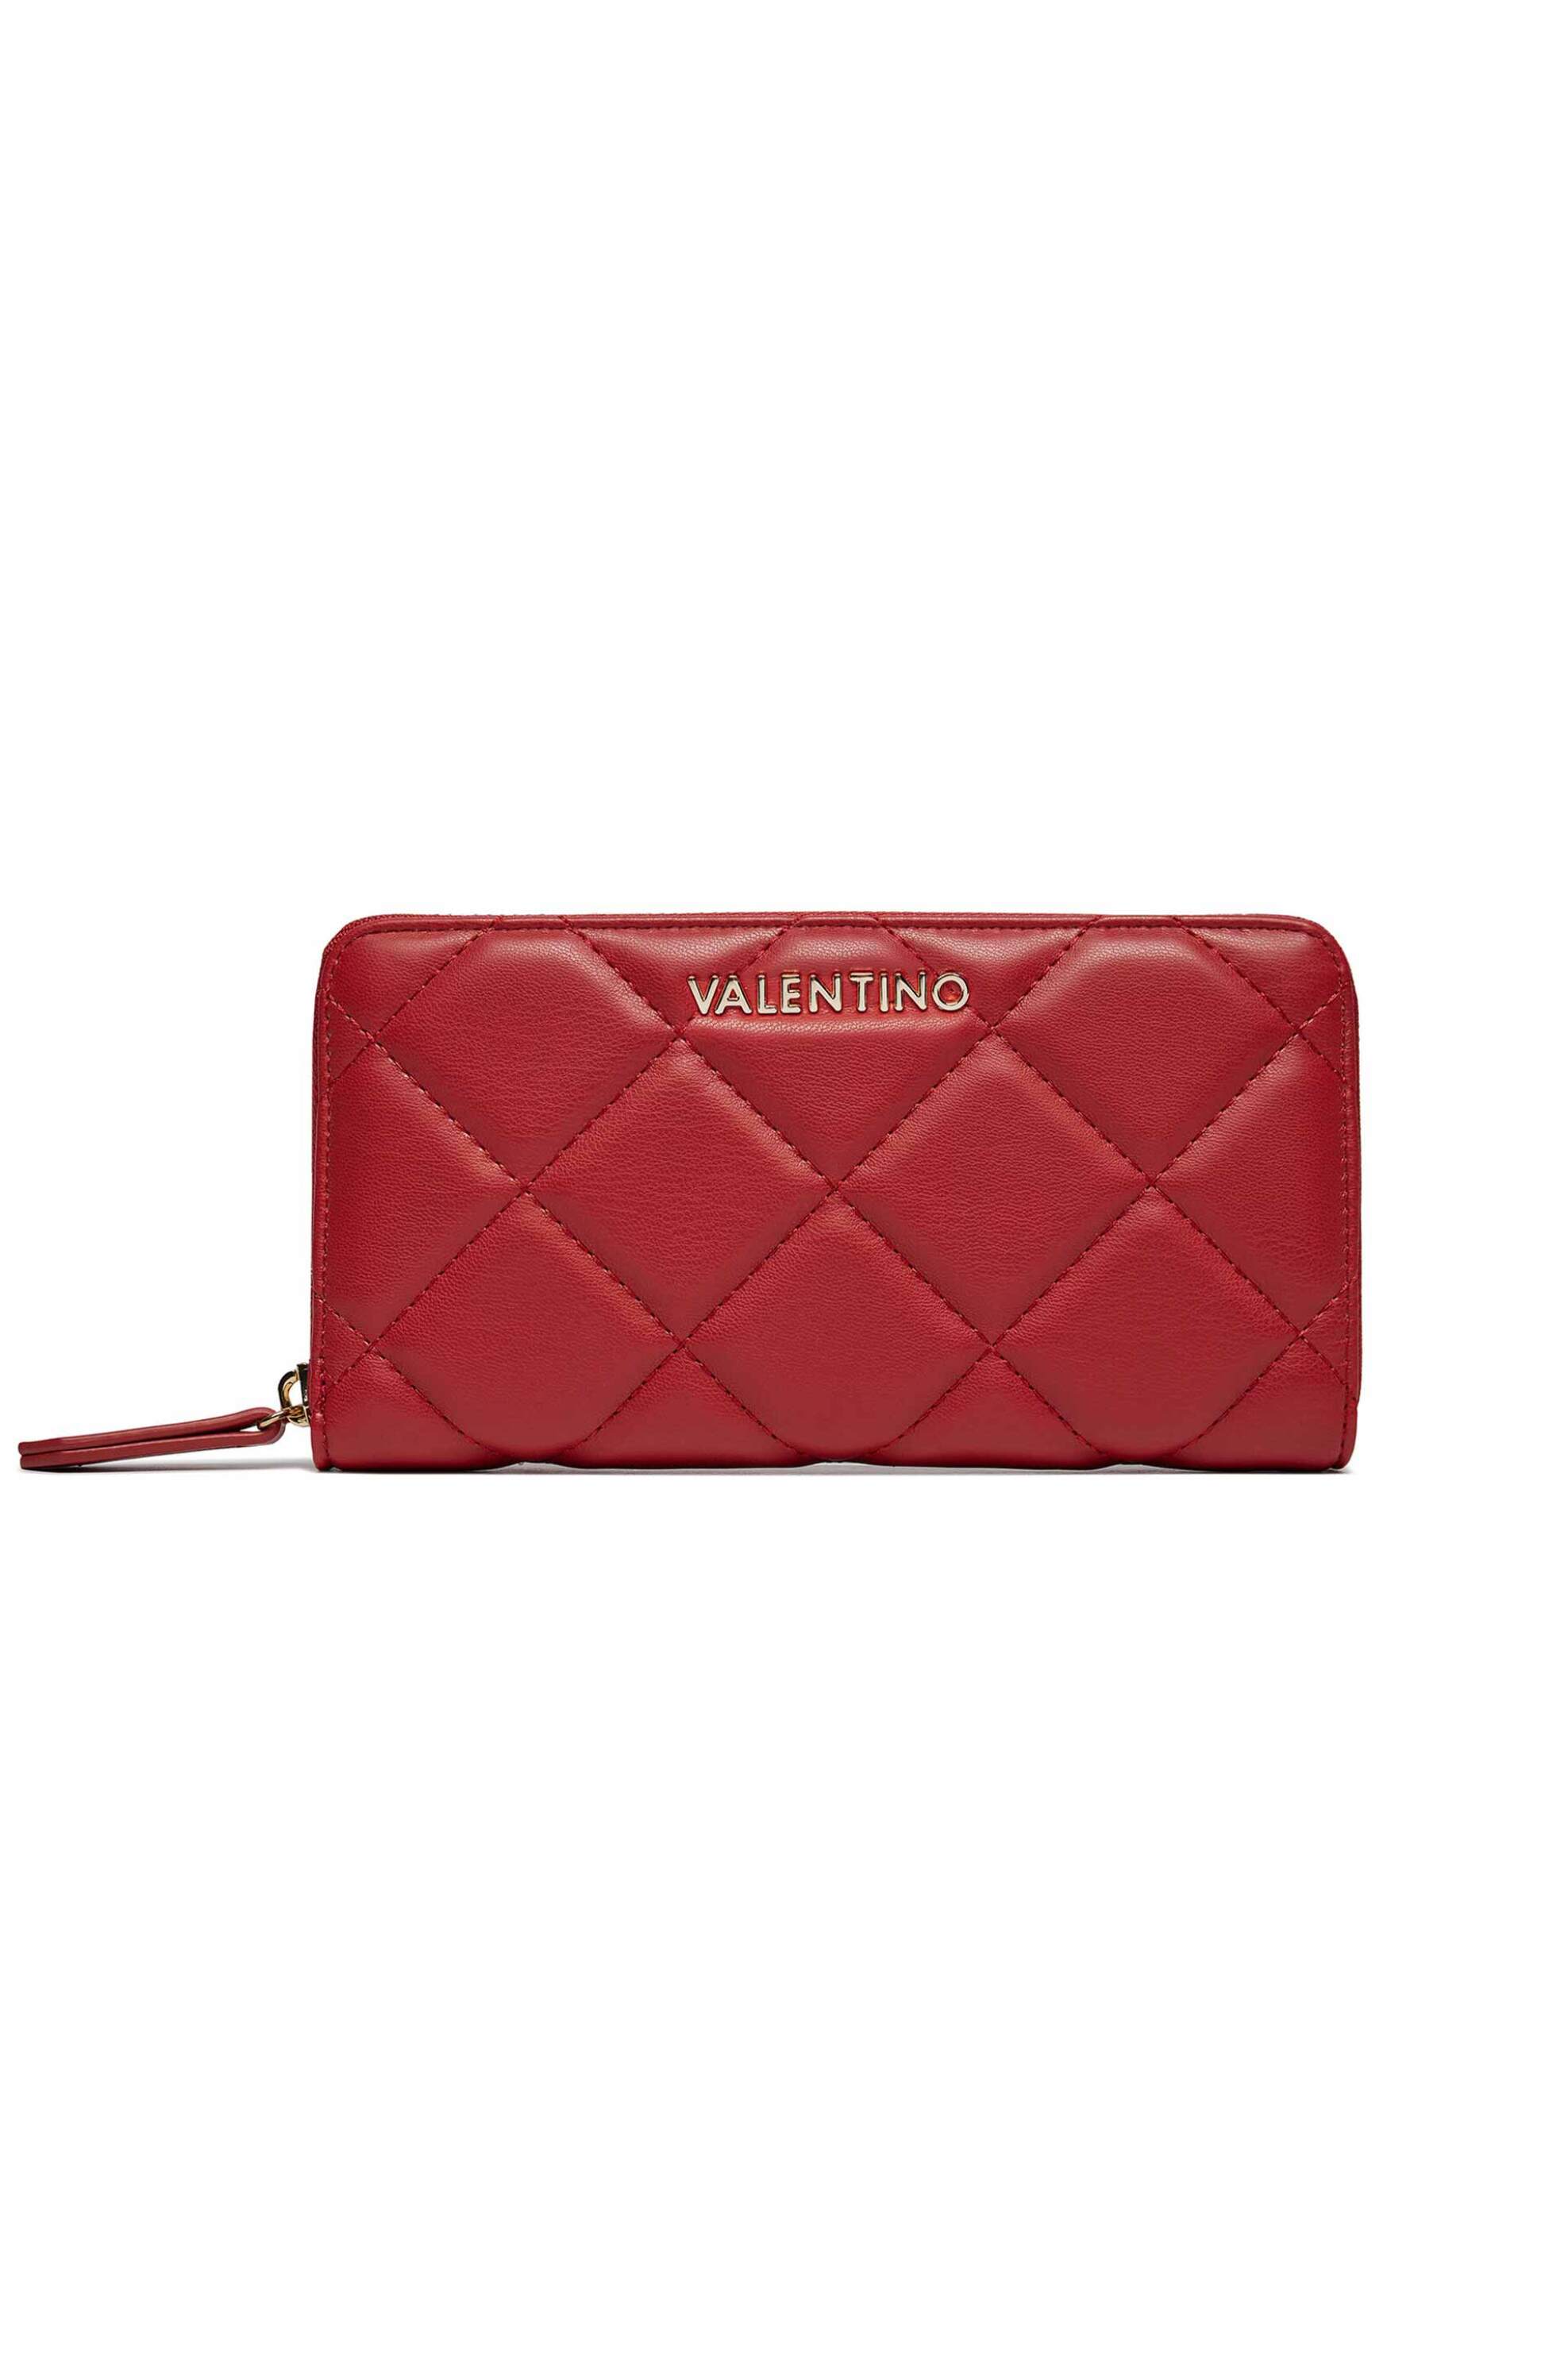 Γυναίκα > ΑΞΕΣΟΥΑΡ > Πορτοφόλια & Θήκες Valentino γυναικείο πορτοφόλι με all-over καπιτονέ σχέδιο μονόχρωμο "Ocarina" - 55KVPS3KK155R/O Κόκκινο